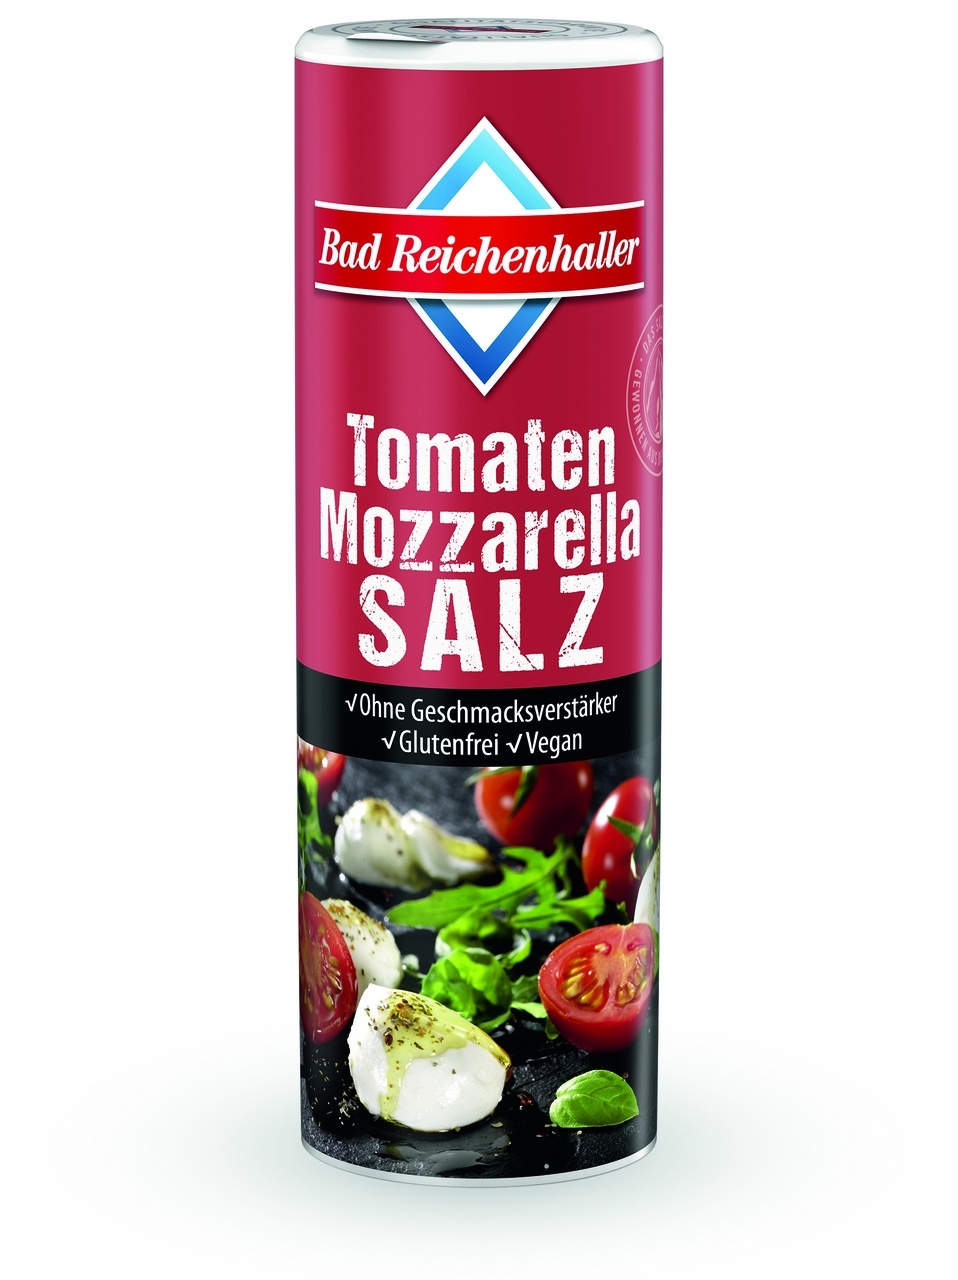 Bad Reichenhaller Tomaten-Mozzarella-Salz 6 x 300 g (1,8 kg)